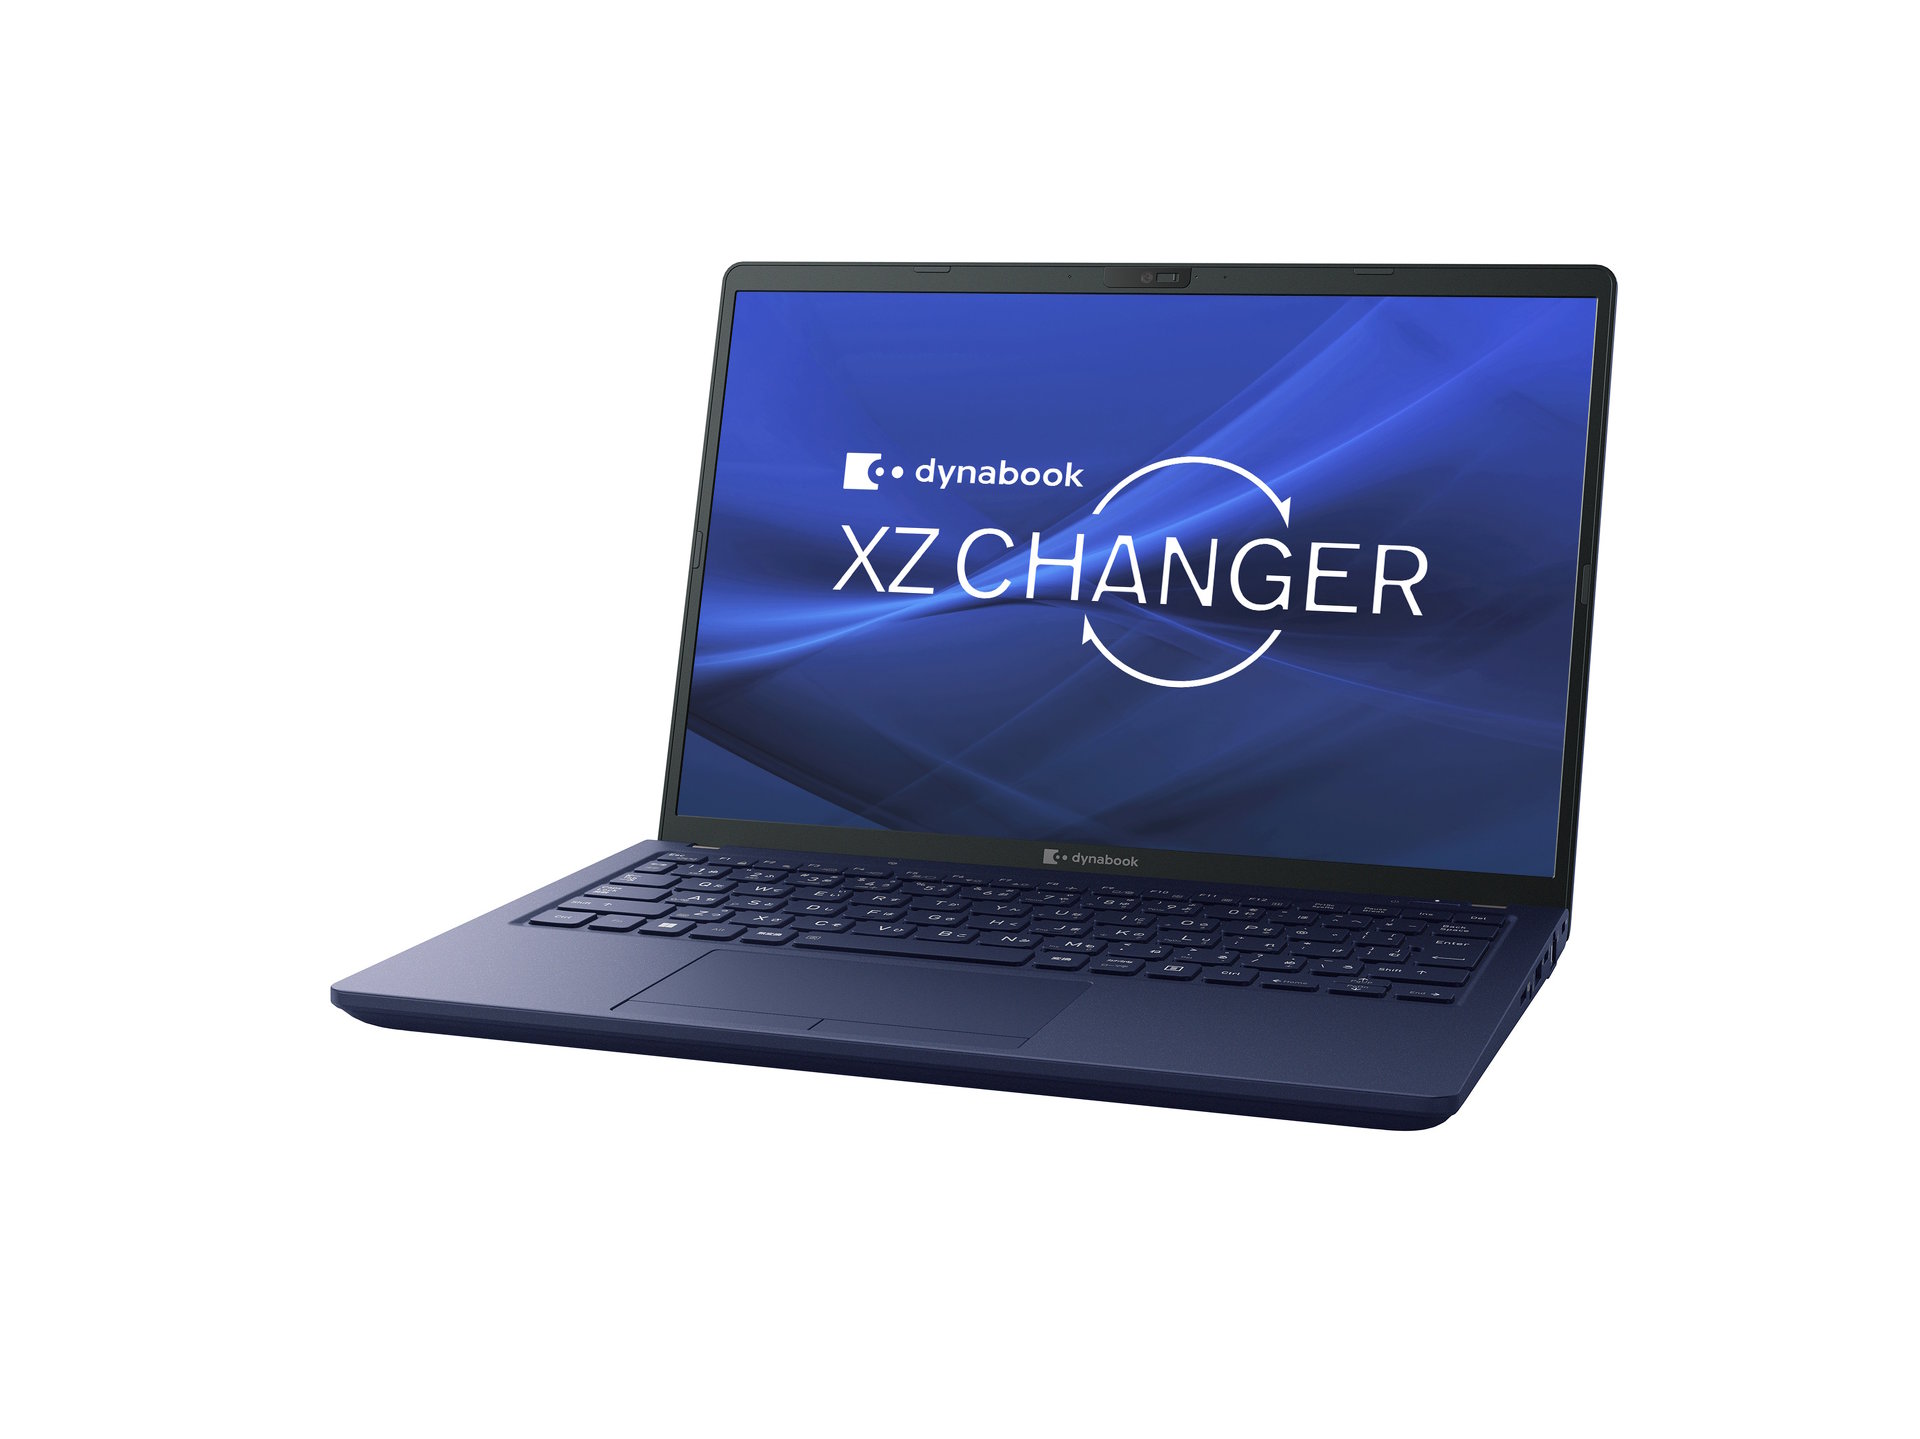 バッテリー交換可能なモバイルノートPC「dynabook XZ CHANGER」を直販 